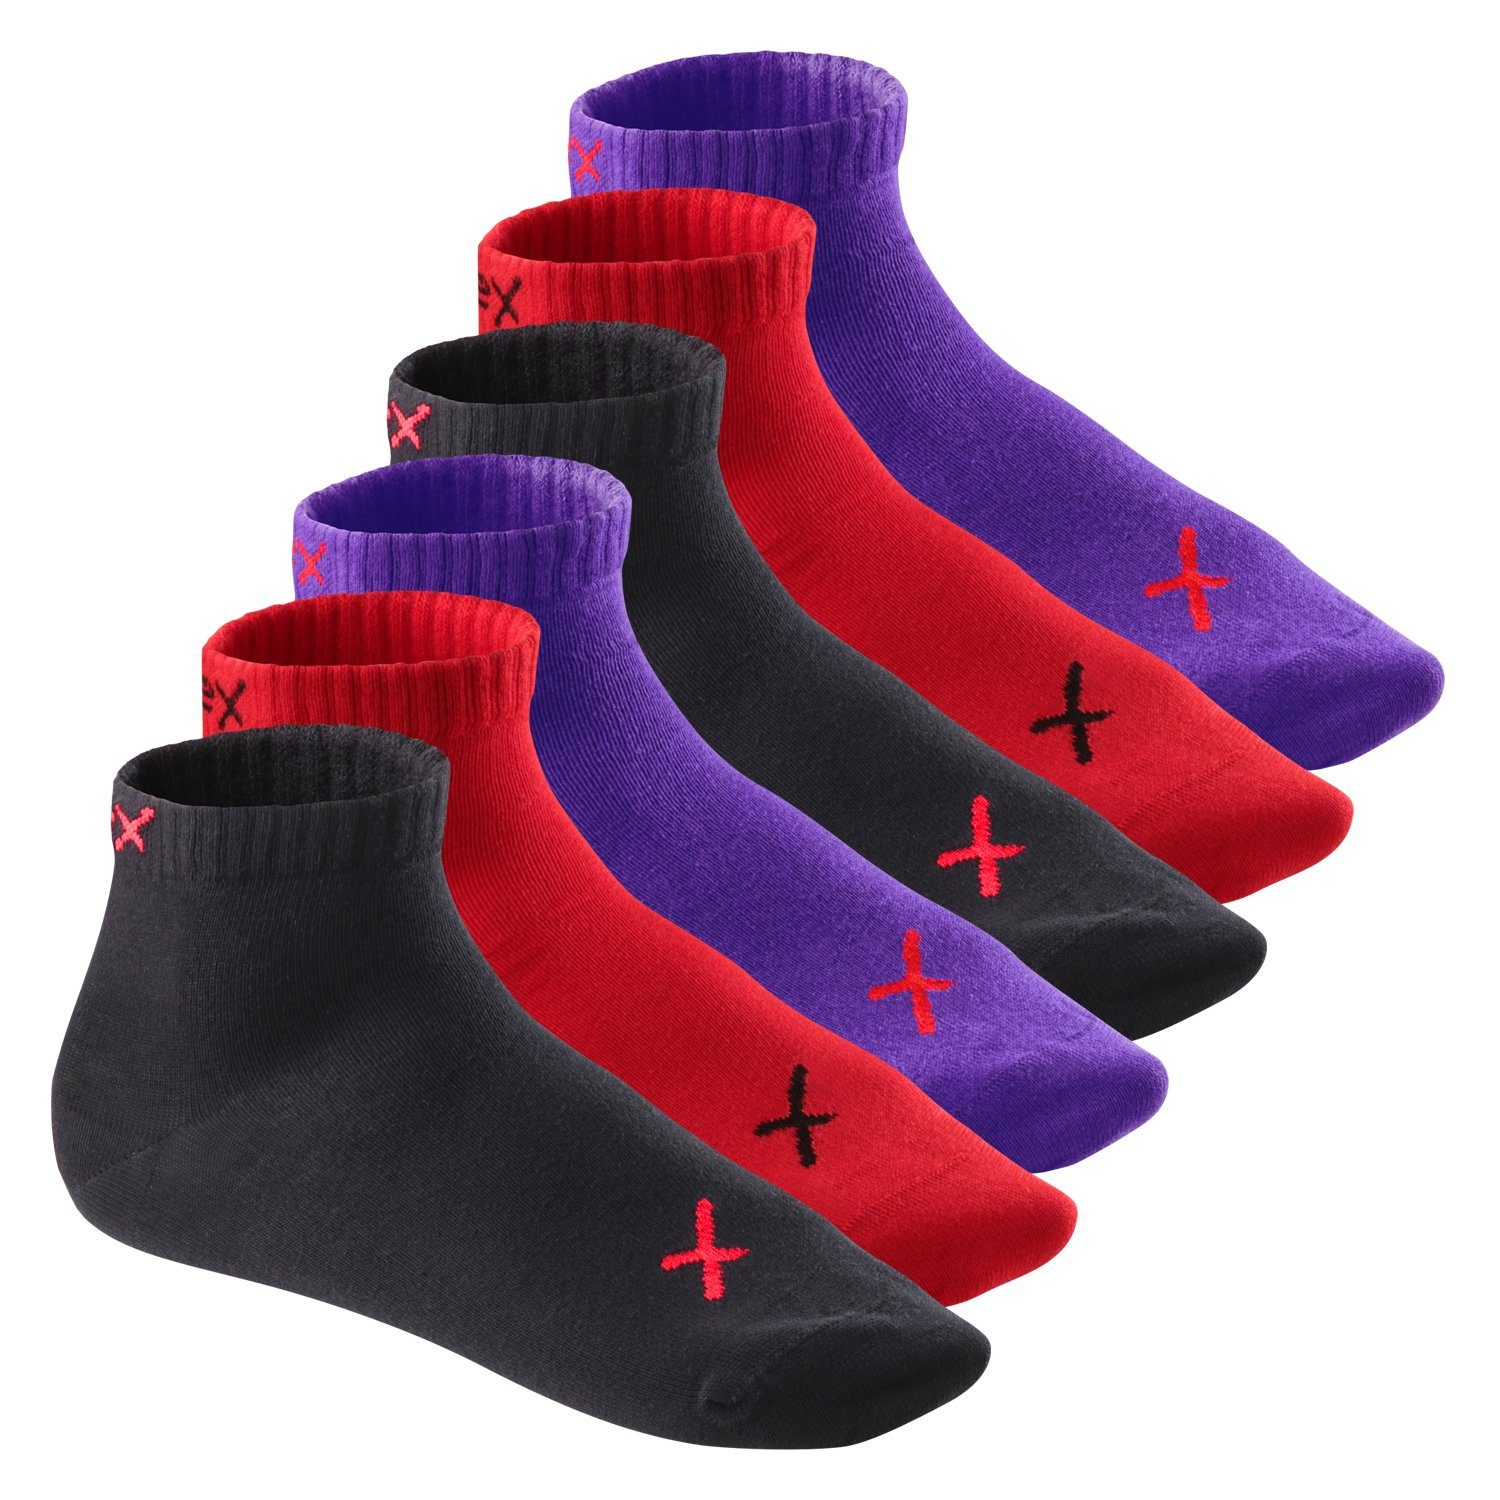 CFLEX Kurzsocken Lifestyle Kurzschaft Socken für Damen & Herren (6 Paar) Sneaker Iridium Flame